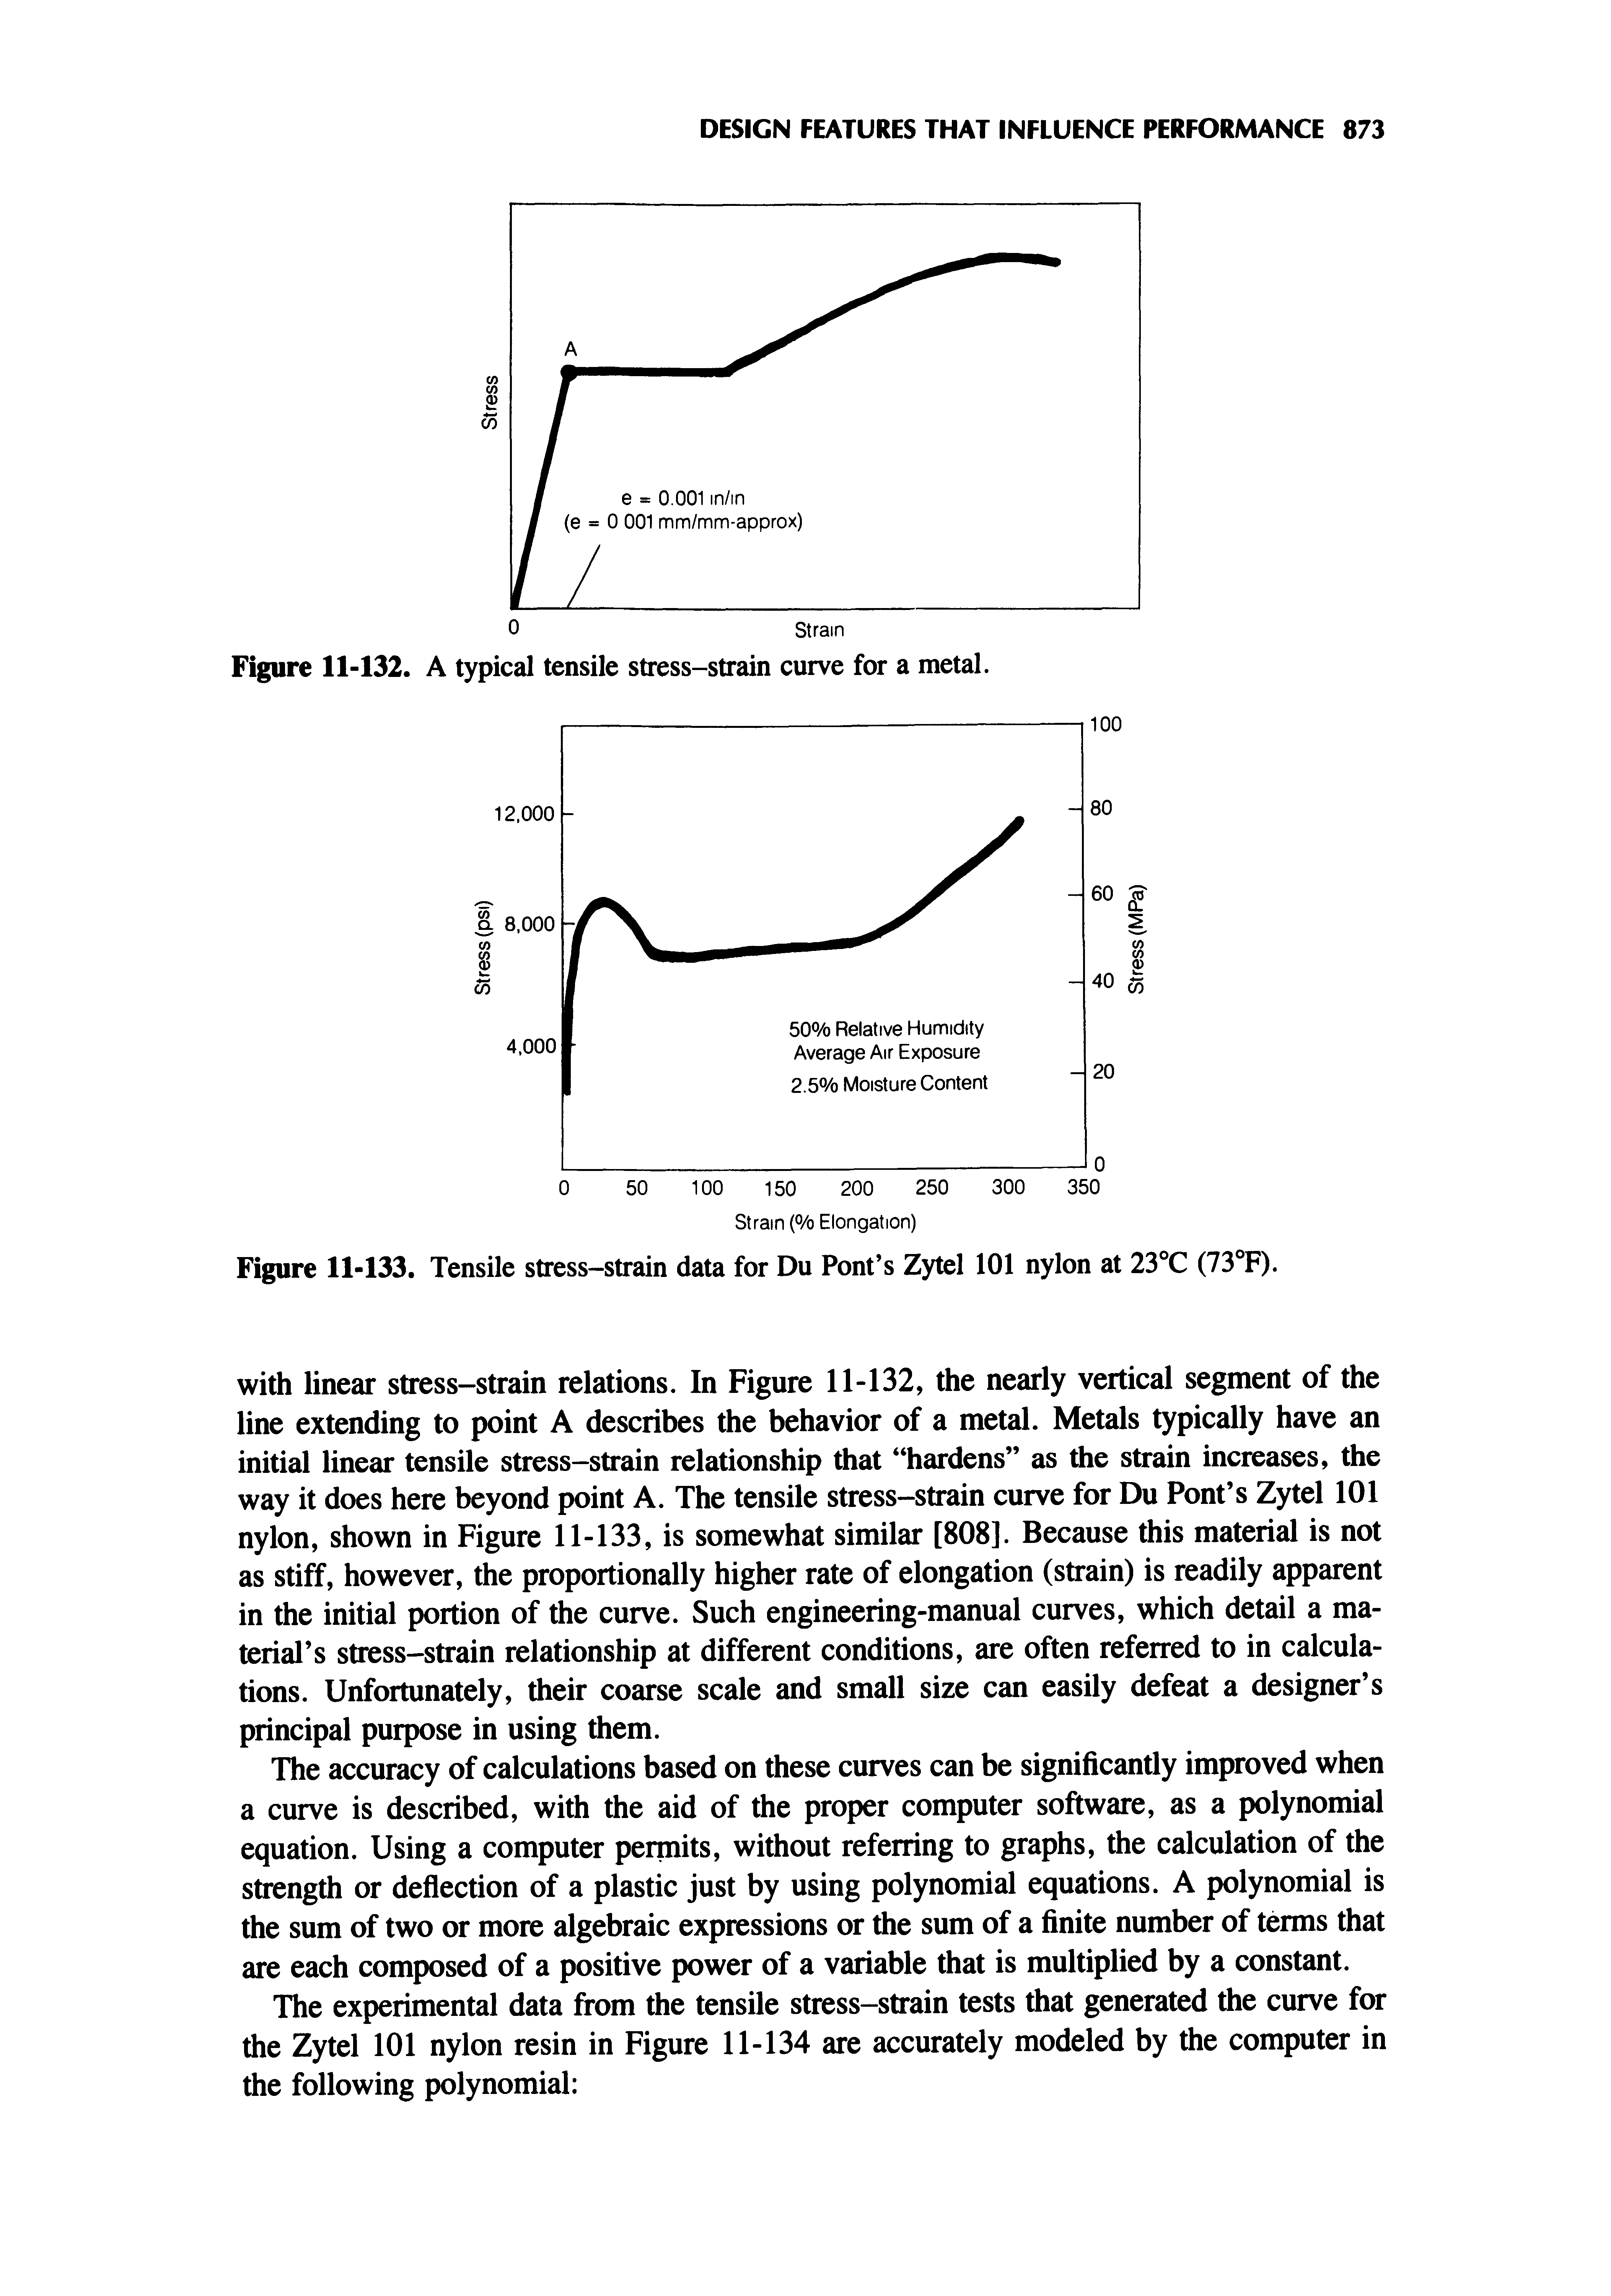 Figure 11-133. Tensile stress-strain data for Du Font s Zytel 101 nylon at 23°C (73 F).